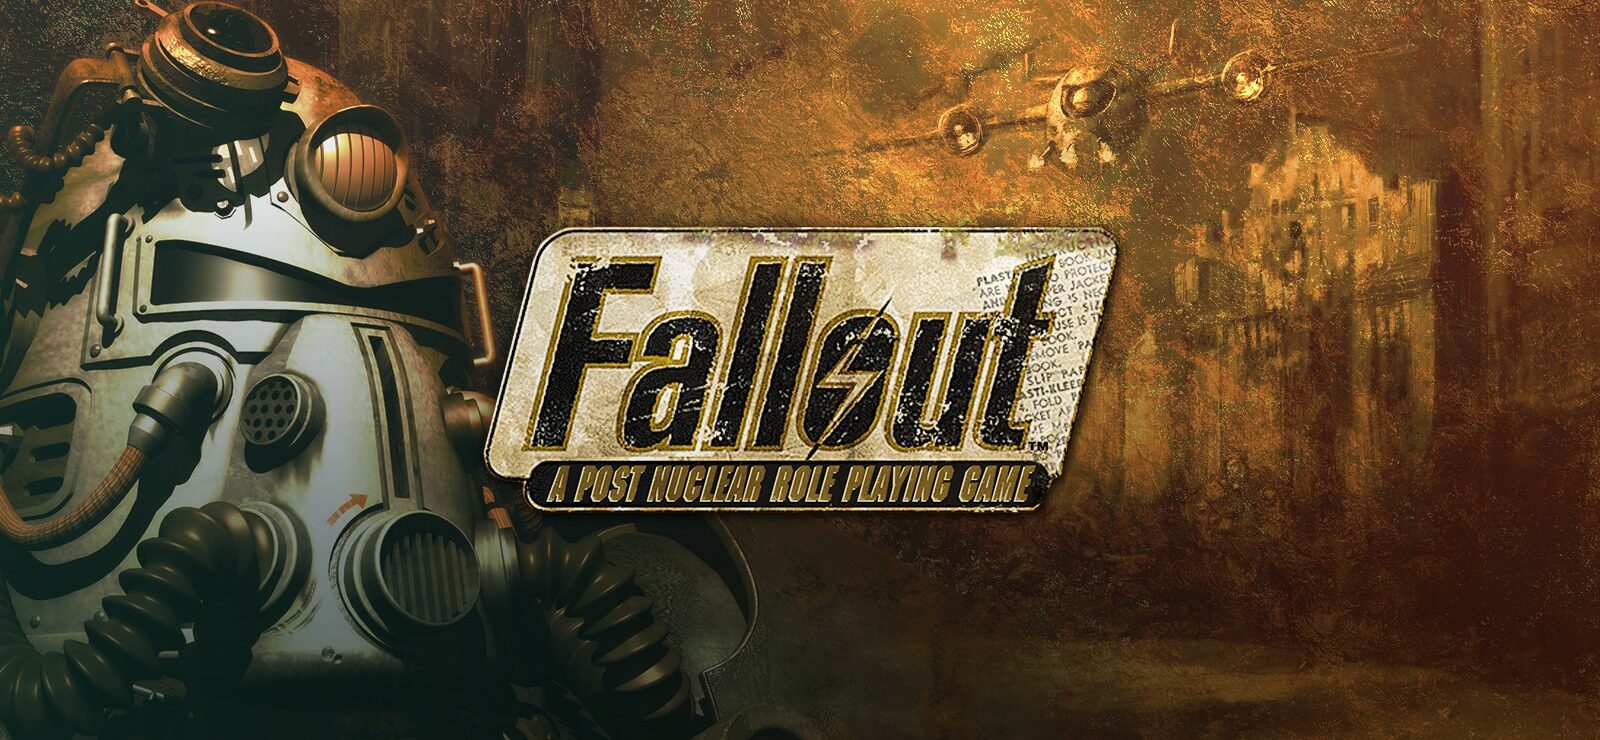 Fallout New Vegas - ПОЛНОЕ ПРОХОЖДЕНИЕ и СЕКРЕТЫ 69 СЕРИЯ приятного просмотра)))